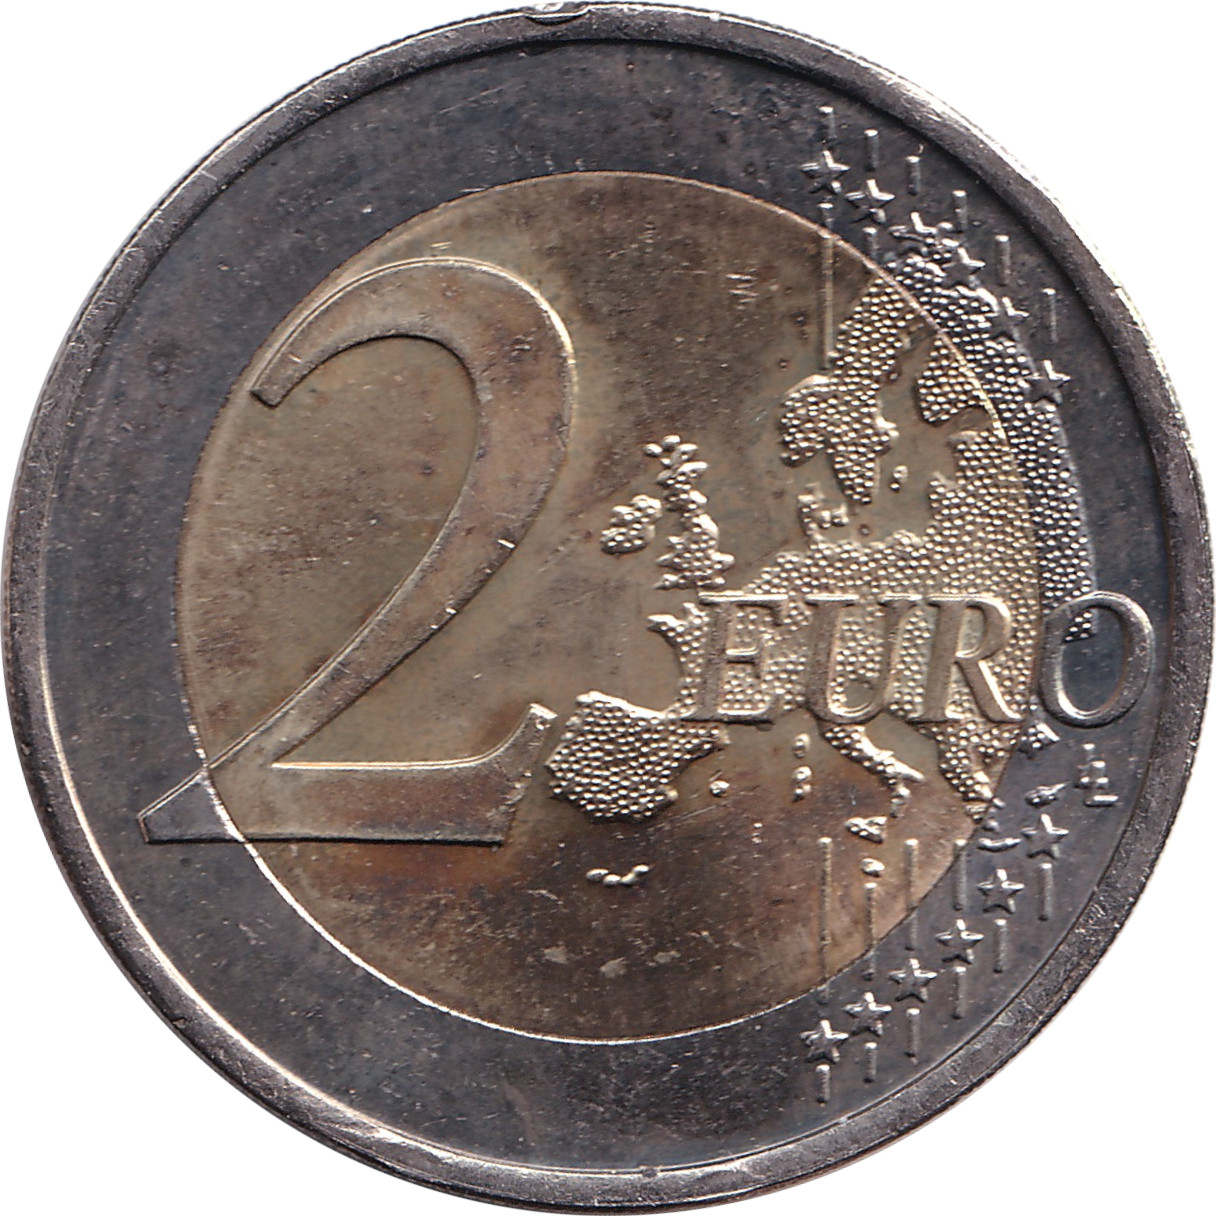 2 euro - Traité de Rome - Portugal